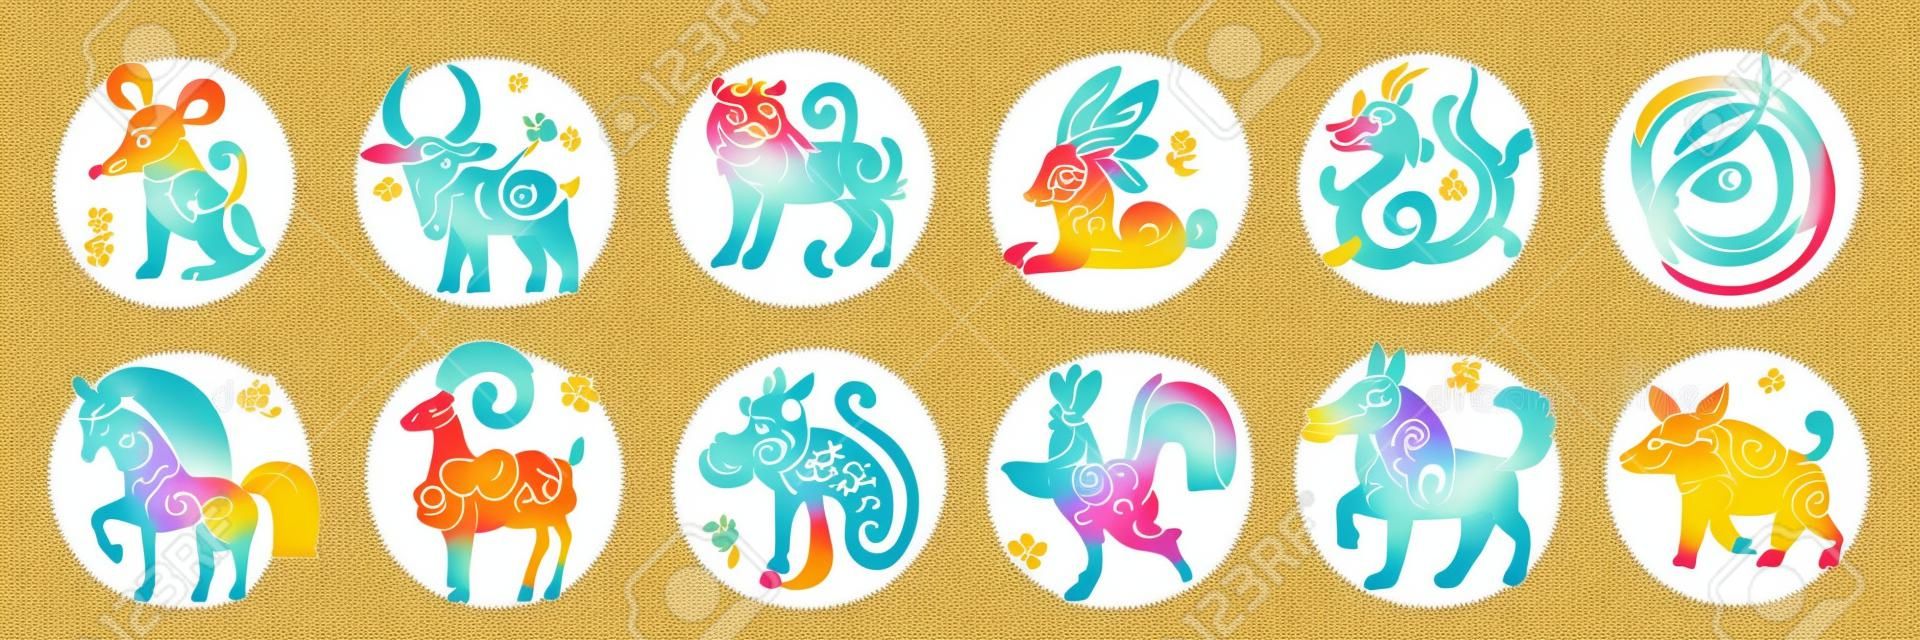 Schattige Chinese horoscoop dierenriem set. Verzameling van dieren symbolen van het jaar. China Nieuwjaar mascottes geïsoleerd op witte achtergrond. Vector illustratie van kalender astrologische tekens op cirkel stempels